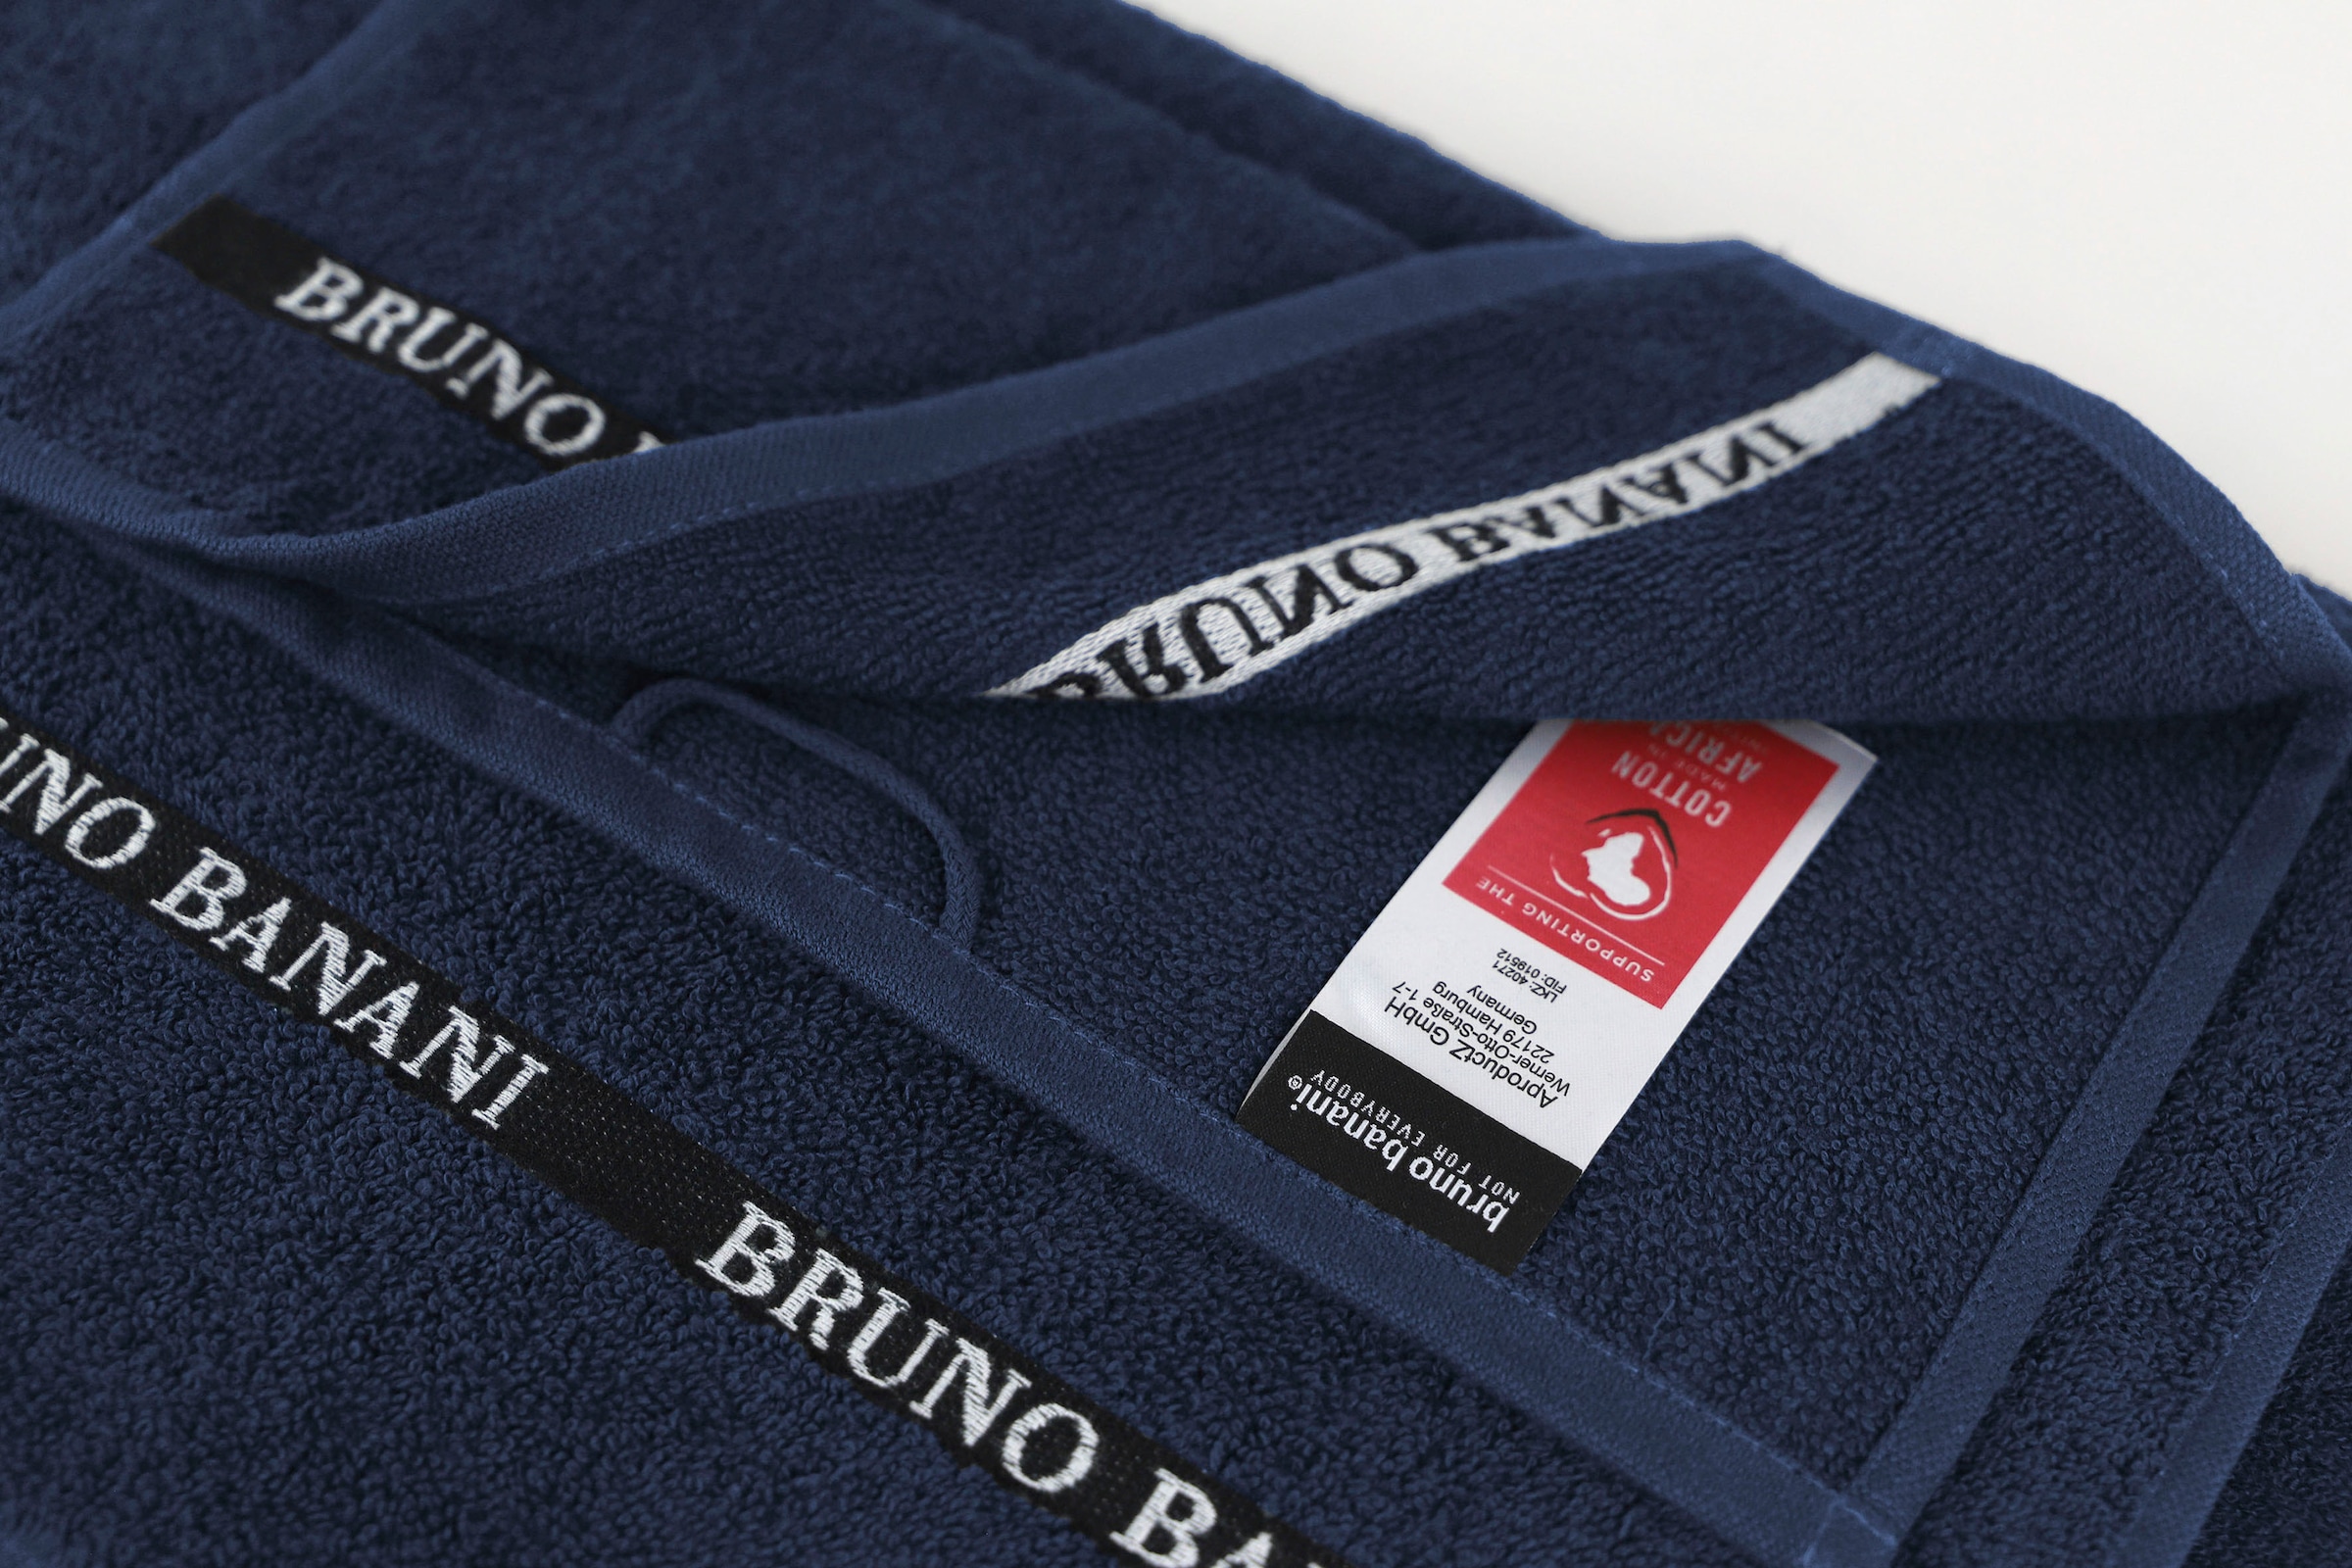 Bruno Banani Handtuch Set »Danny«, Set, 6 tlg., Walkfrottier, mit  Logostreifen, einfarbiges Handtuch-Set aus 100% Baumwolle online shoppen |  Jelmoli-Versand